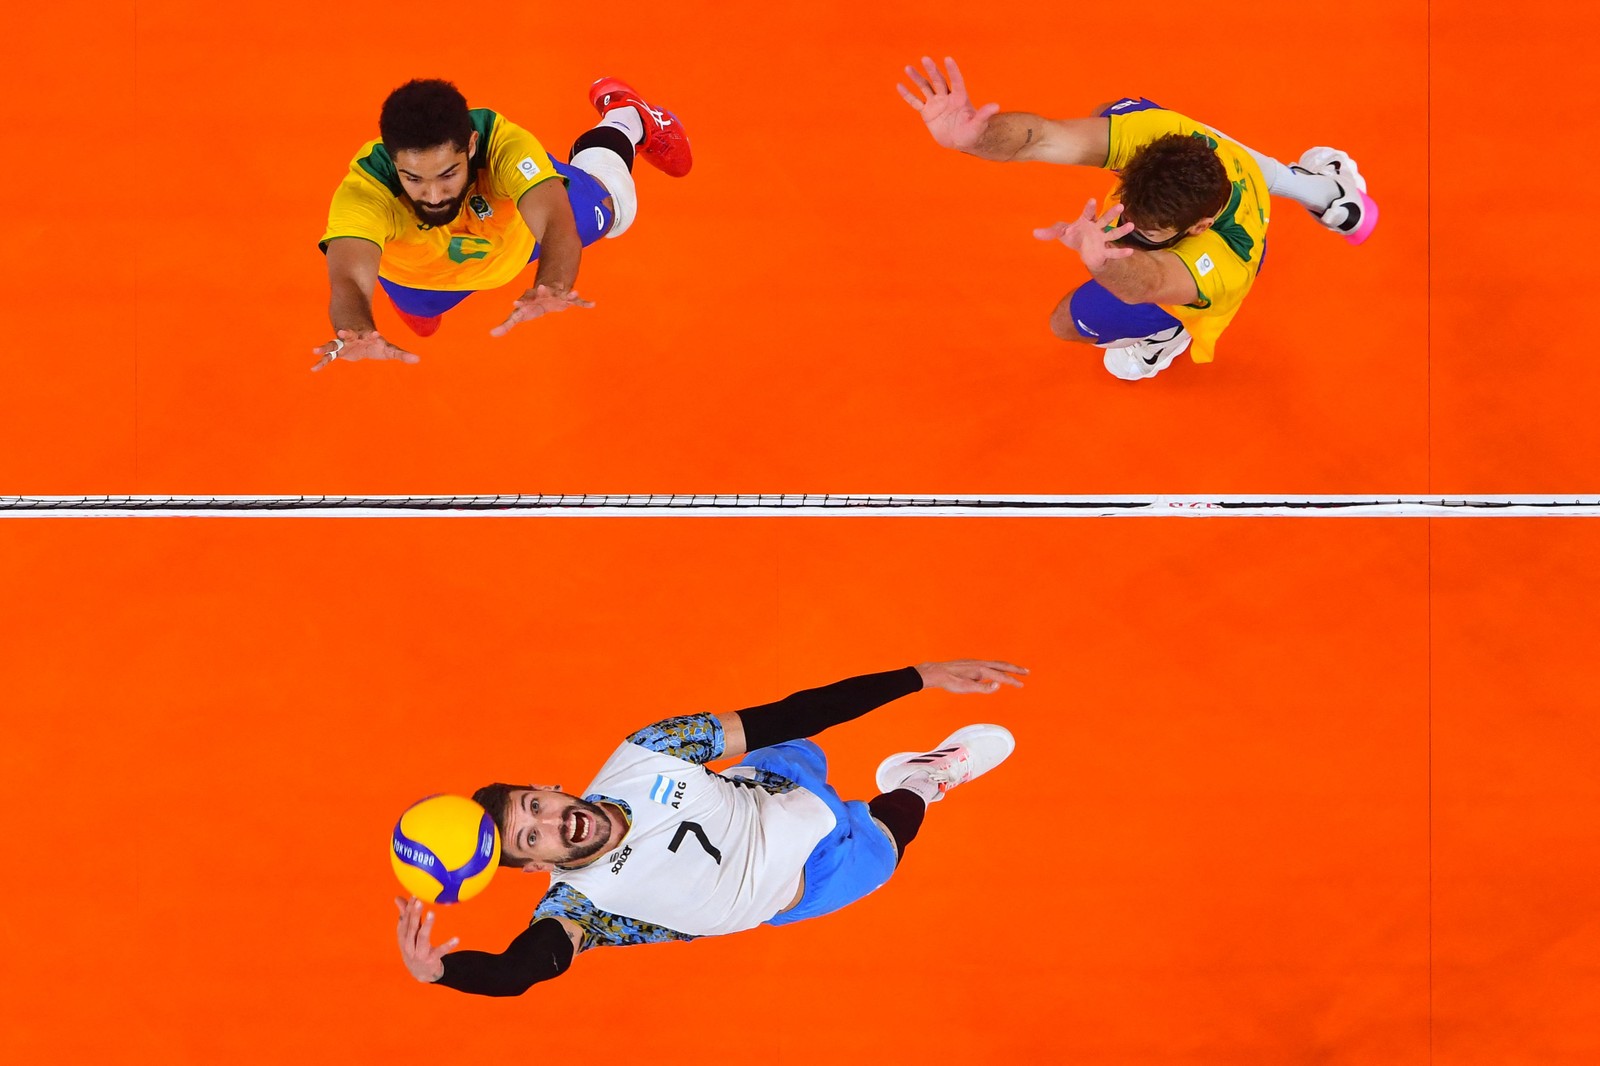 Na segunda disputa de terceiro lugar da história das Olimpíadas entre Brasil e Argentina, os hermanos venceram novamente, conquistando o bronze em TóquioAFP